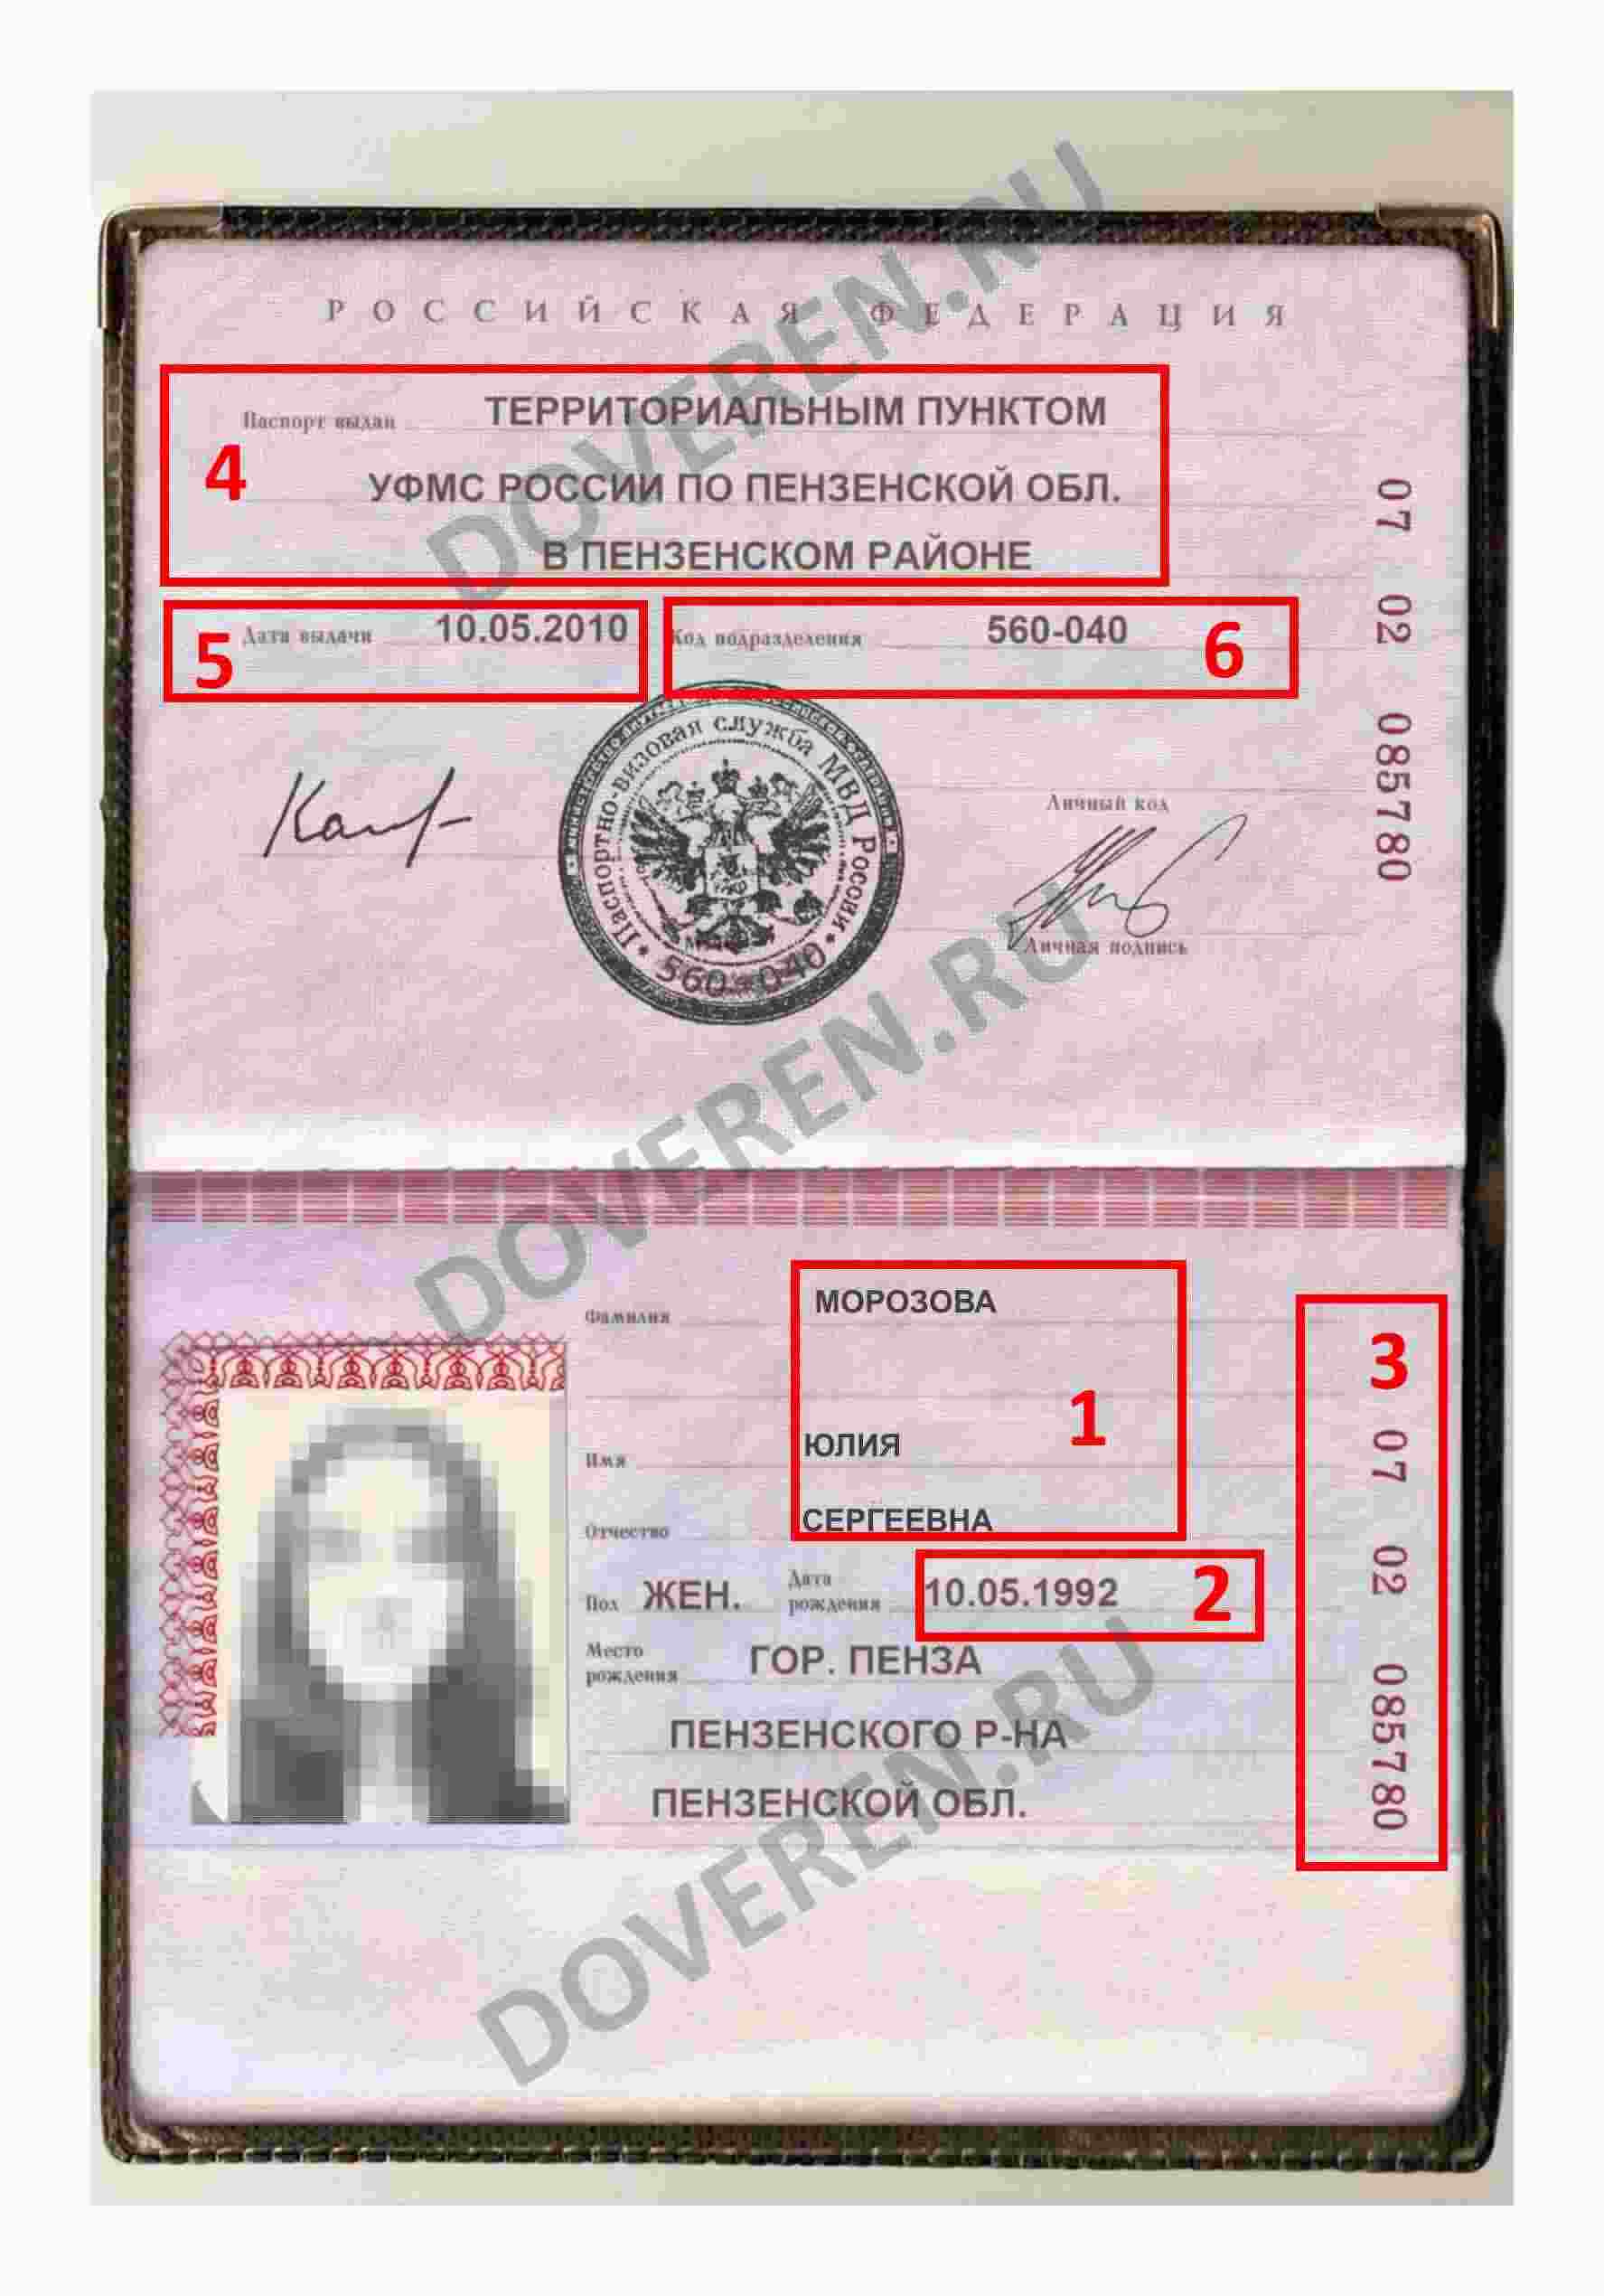 Паспорт доверителя